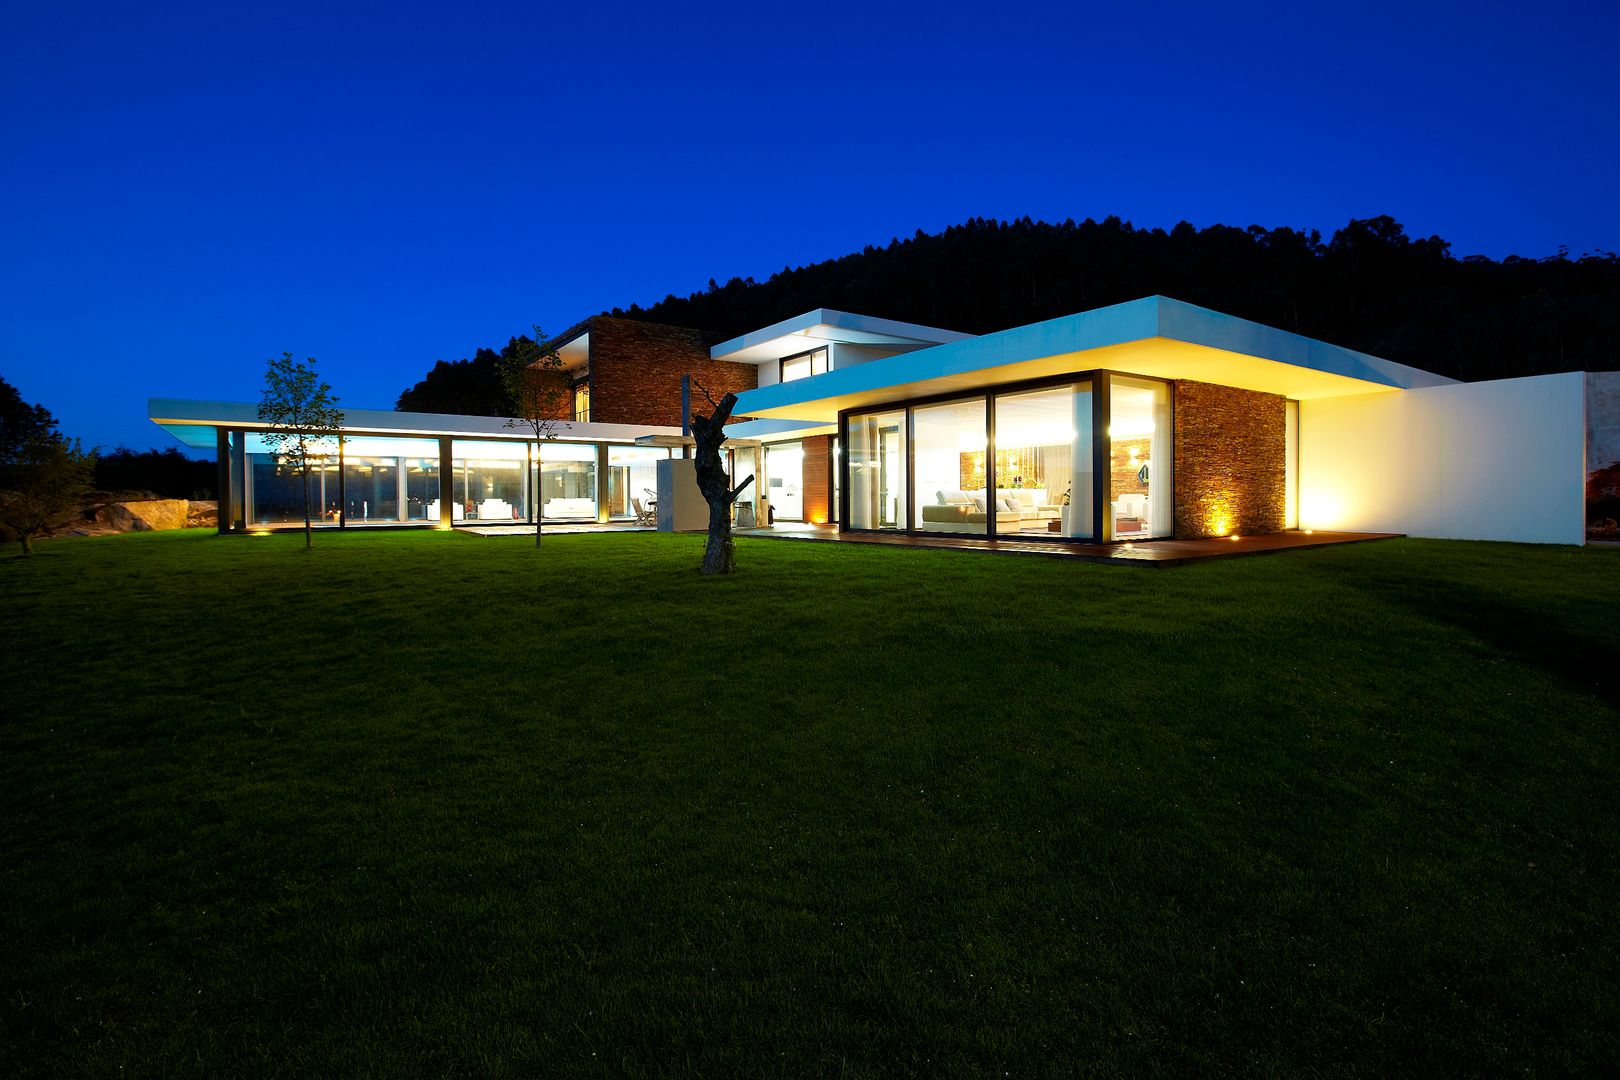 Casa moderna de dimensões generosas e piscina interior, Risco Singular - Arquitectura Lda Risco Singular - Arquitectura Lda Casas de estilo minimalista